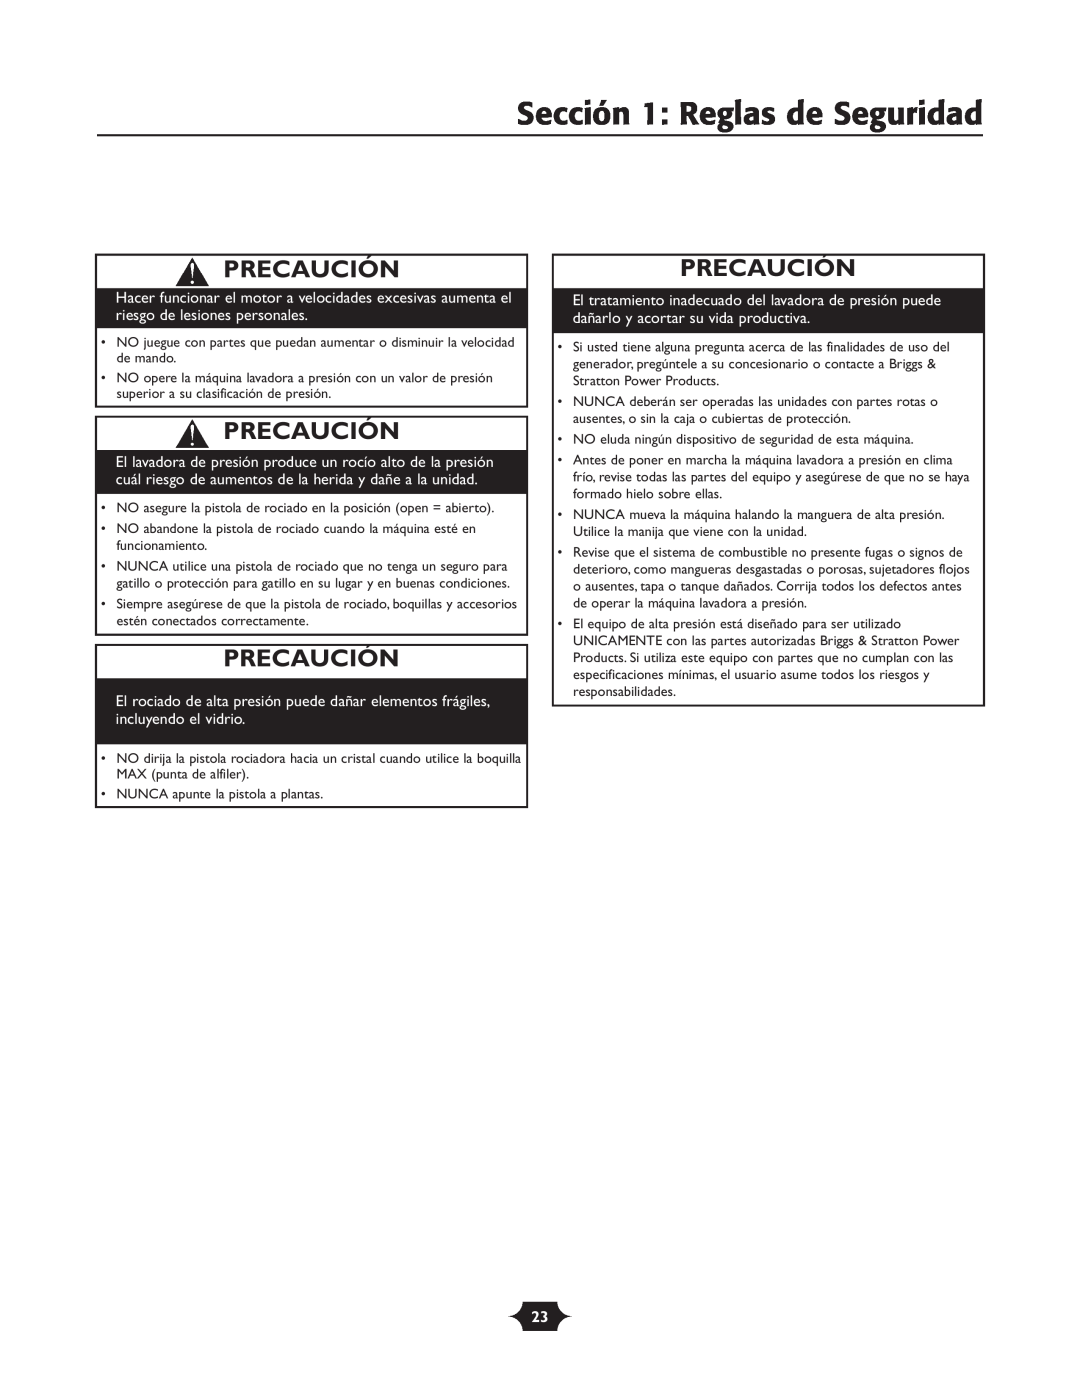 Troy-Bilt 020242-4 manual Precaución, Sección 1: Reglas de Seguridad 